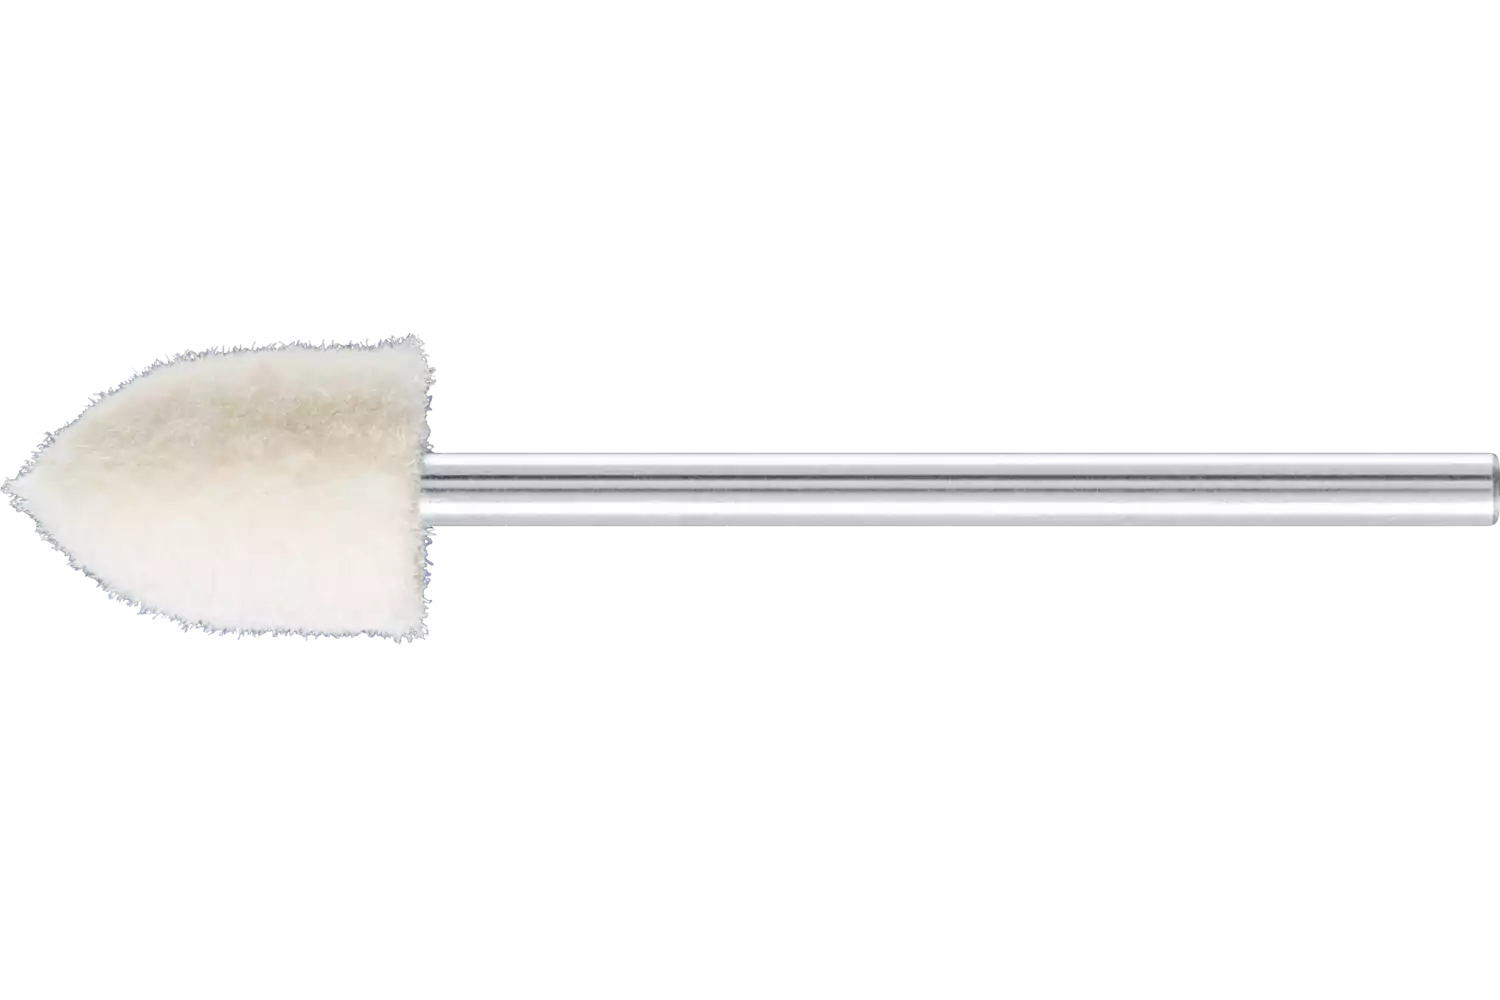 Feltri con gambo per lucidare medio-duri forma a cono appuntito Ø 8x12 mm, gambo Ø 2,35 mm 1